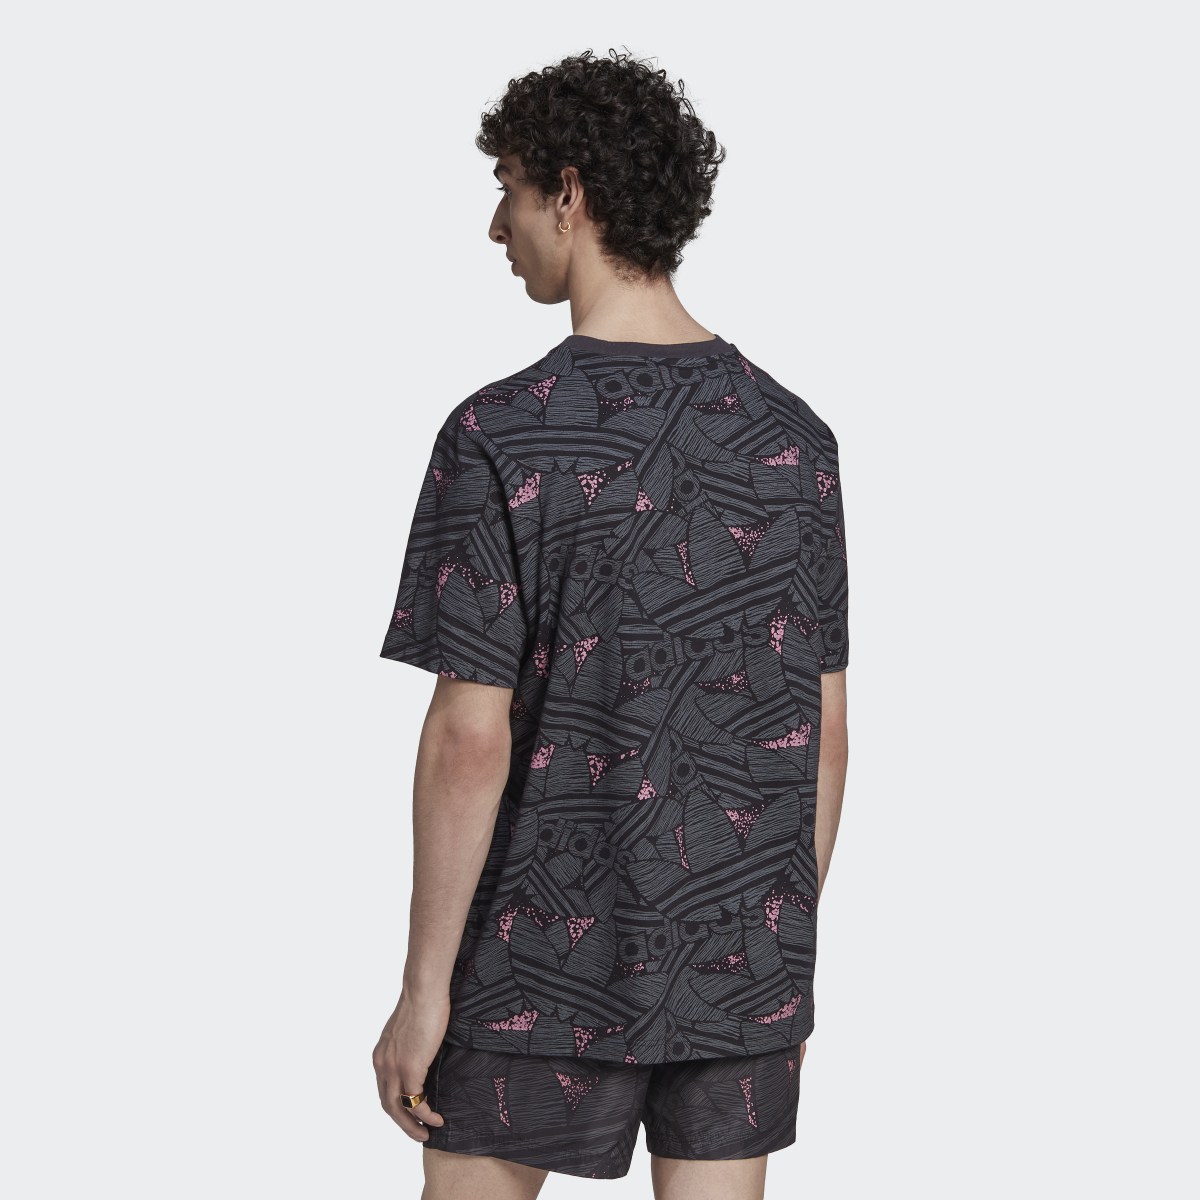 Adidas T-shirt imprimé intégral Trèfle adidas Rekive. 4